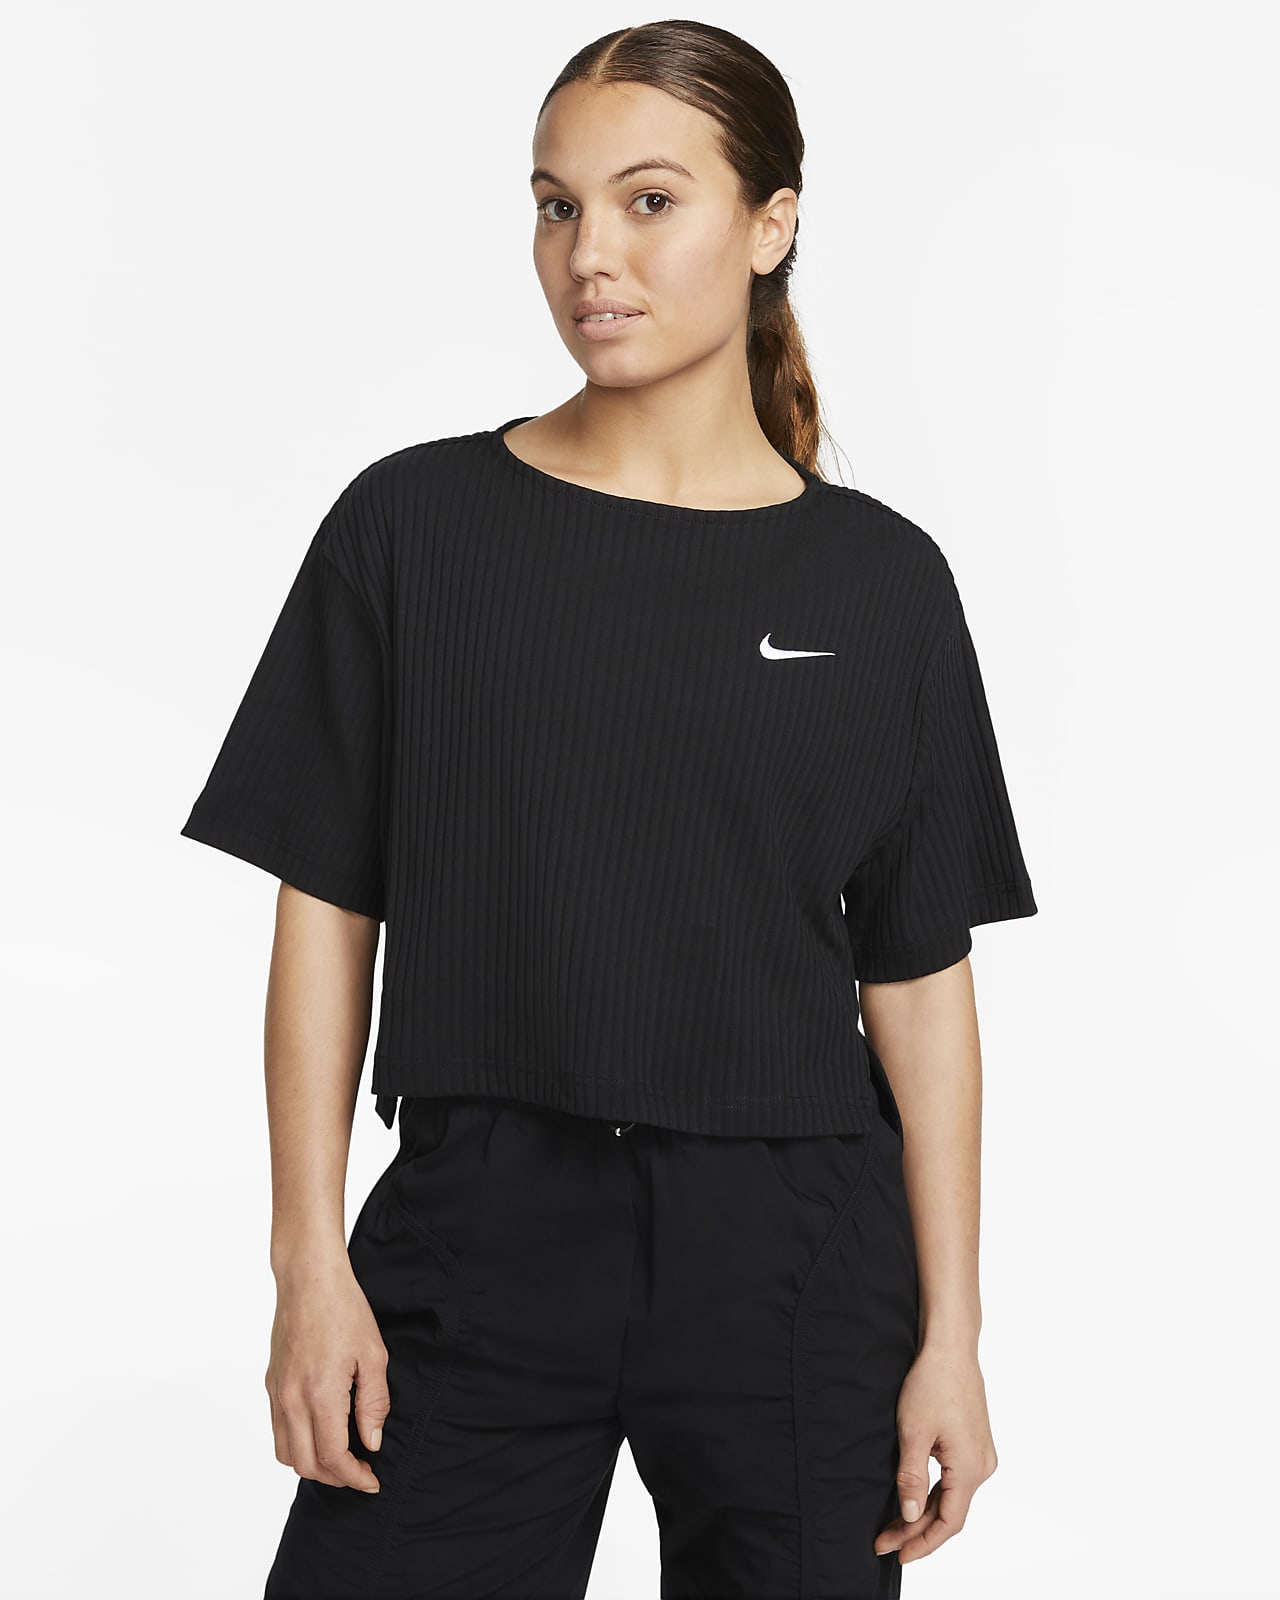 Nike Sportswear Women's Ribbed Jersey Short-Sleeve Top